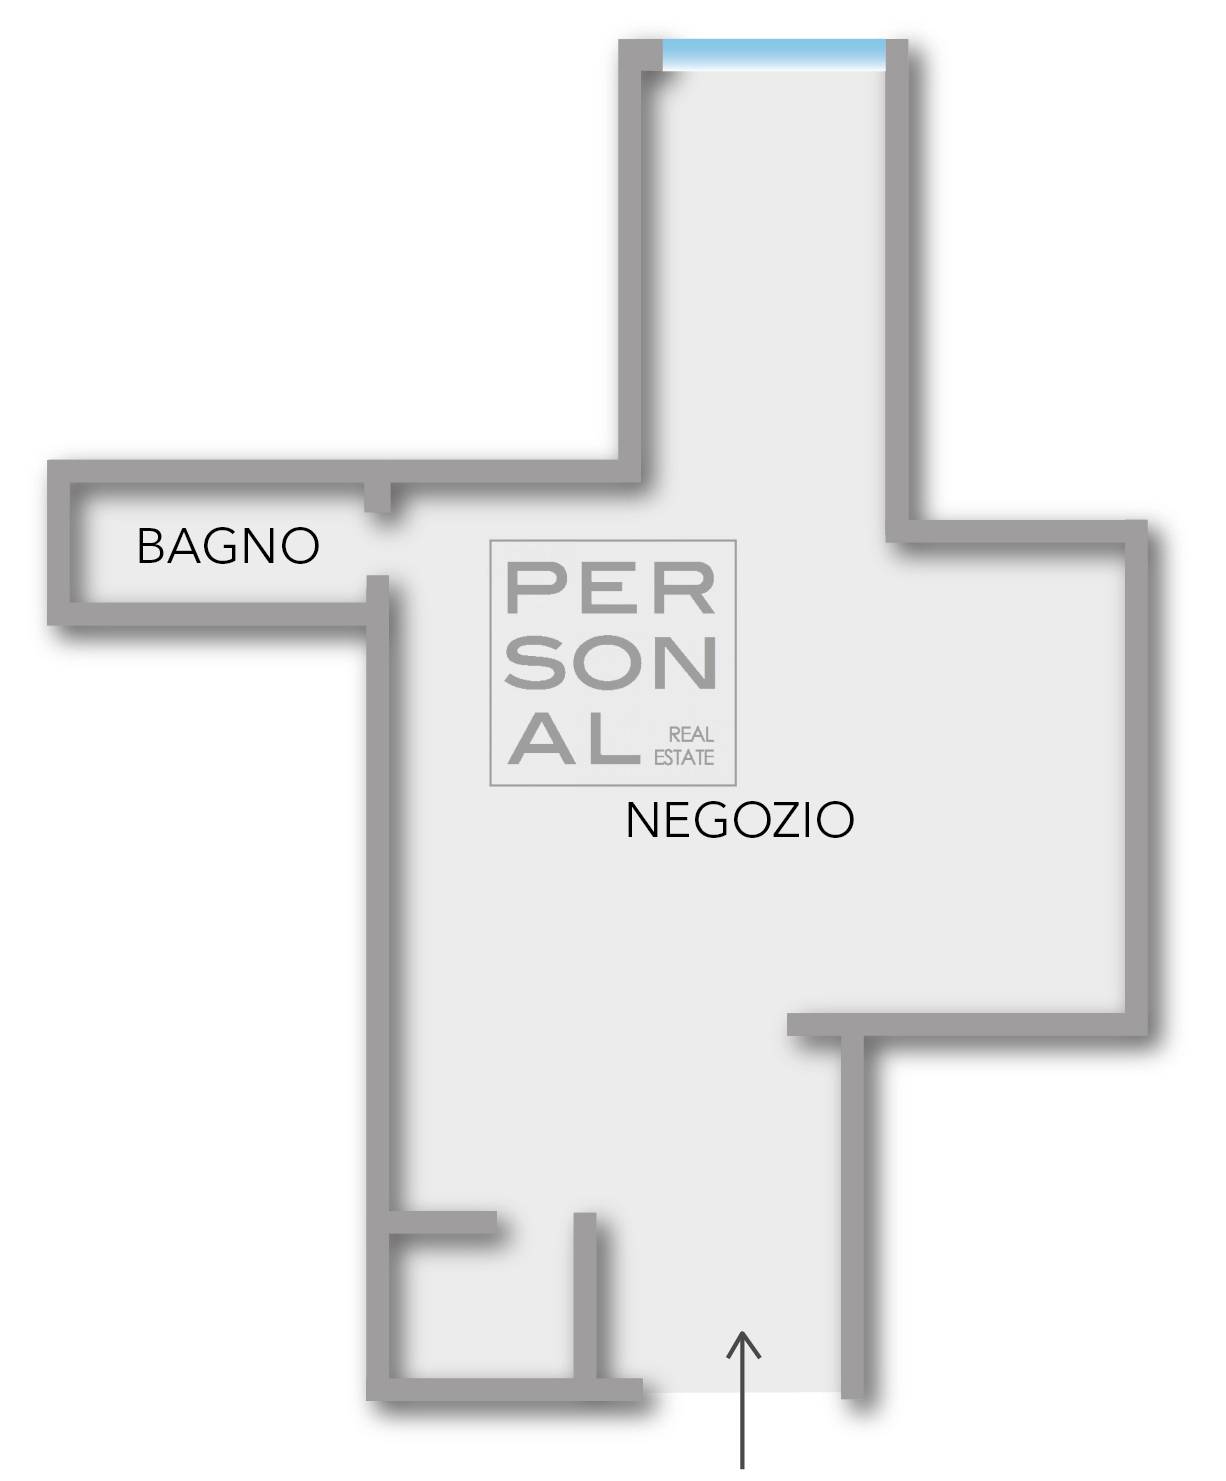 Ufficio / Studio in vendita a Trento, 9999 locali, prezzo € 180.000 | CambioCasa.it